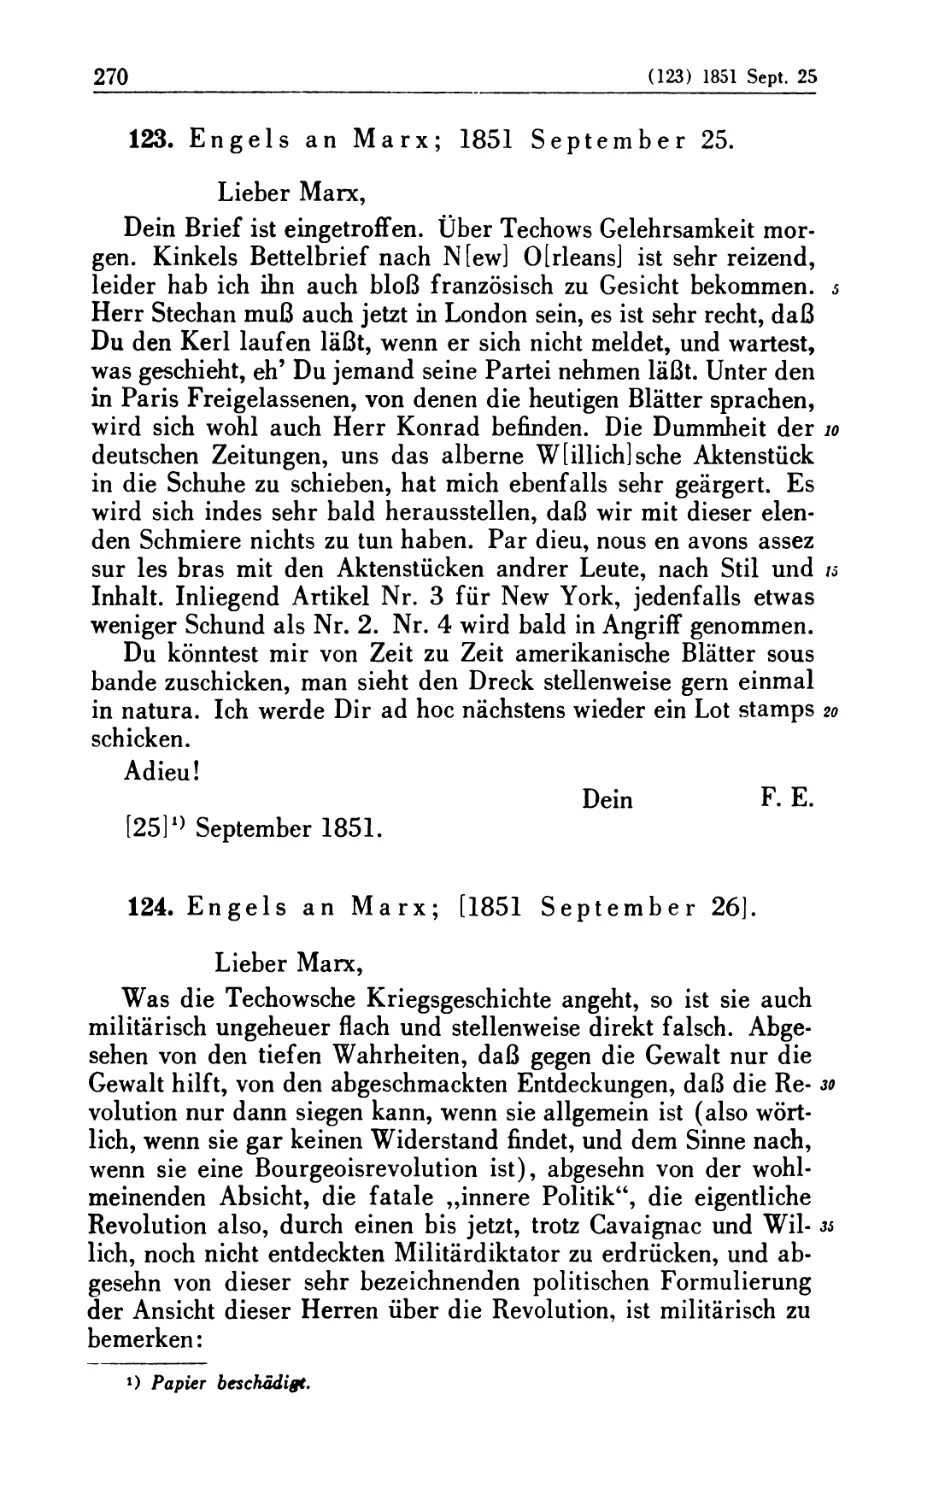 123. Engels an Marx; 1851 September 25
124. Engels an Marx; [1851 September 26]